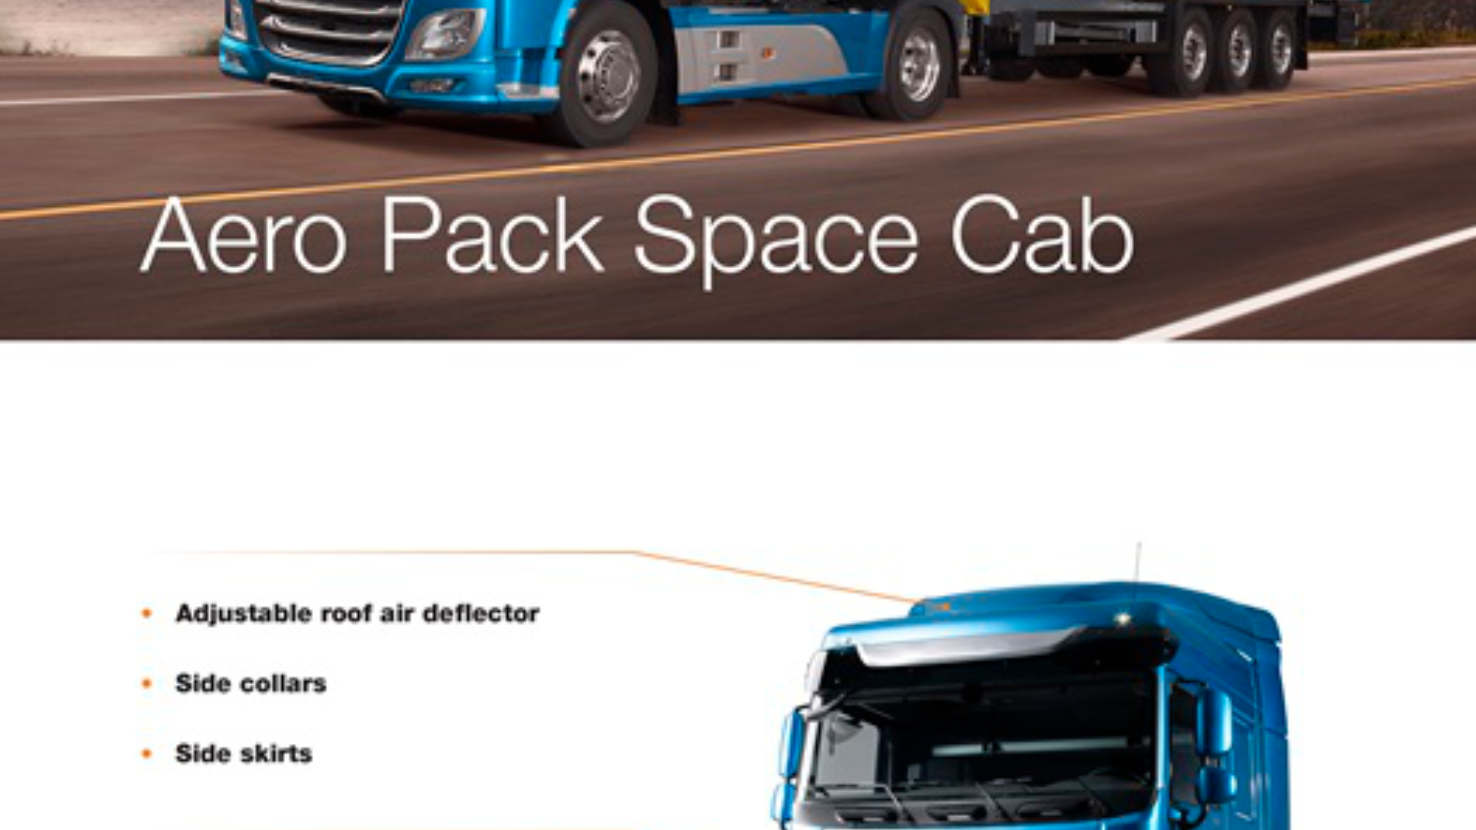 Aero Pack Space Cab